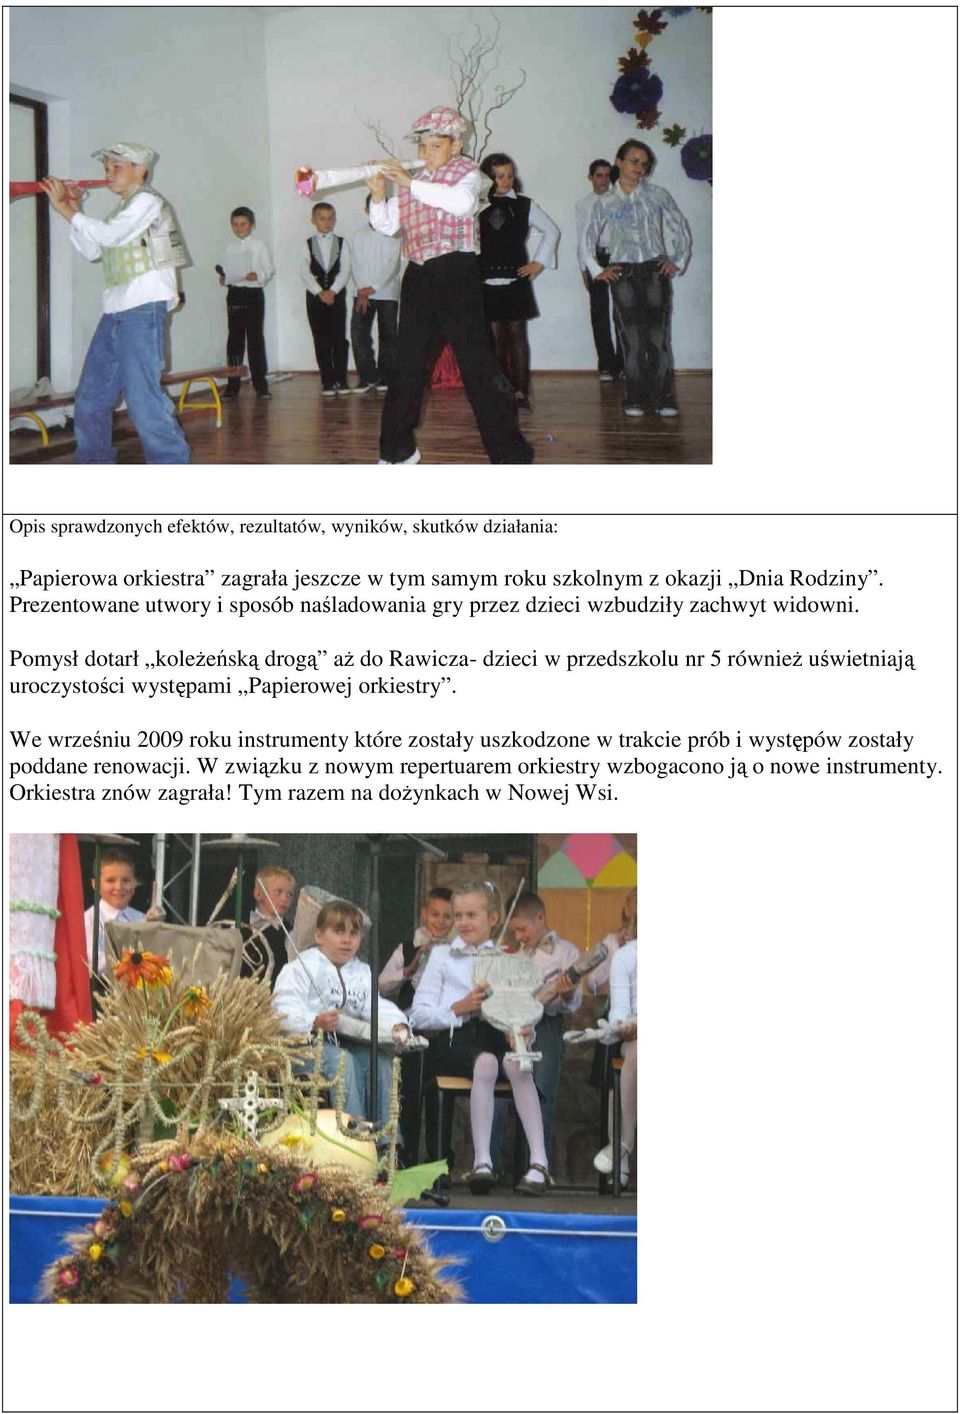 Pomysł dotarł koleżeńską drogą aż do Rawicza- dzieci w przedszkolu nr 5 również uświetniają uroczystości występami Papierowej orkiestry.